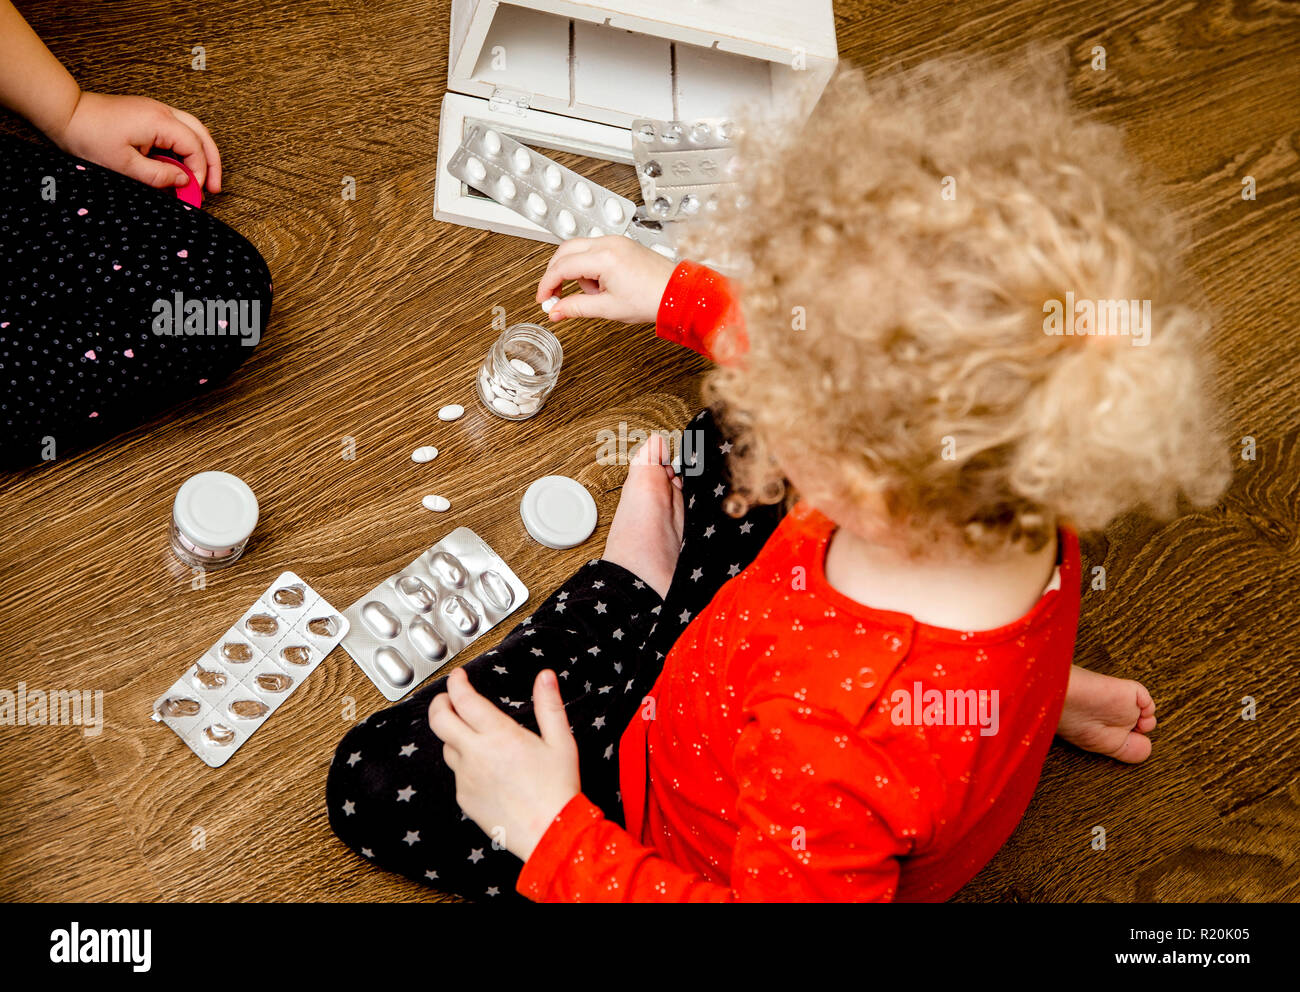 Junge Kind spielen alleine mit Pillen Tabletten auf Home Küche Etage. Von Kindern fernhalten Konzept erreichen. Keine Medizinschrank. Stockfoto